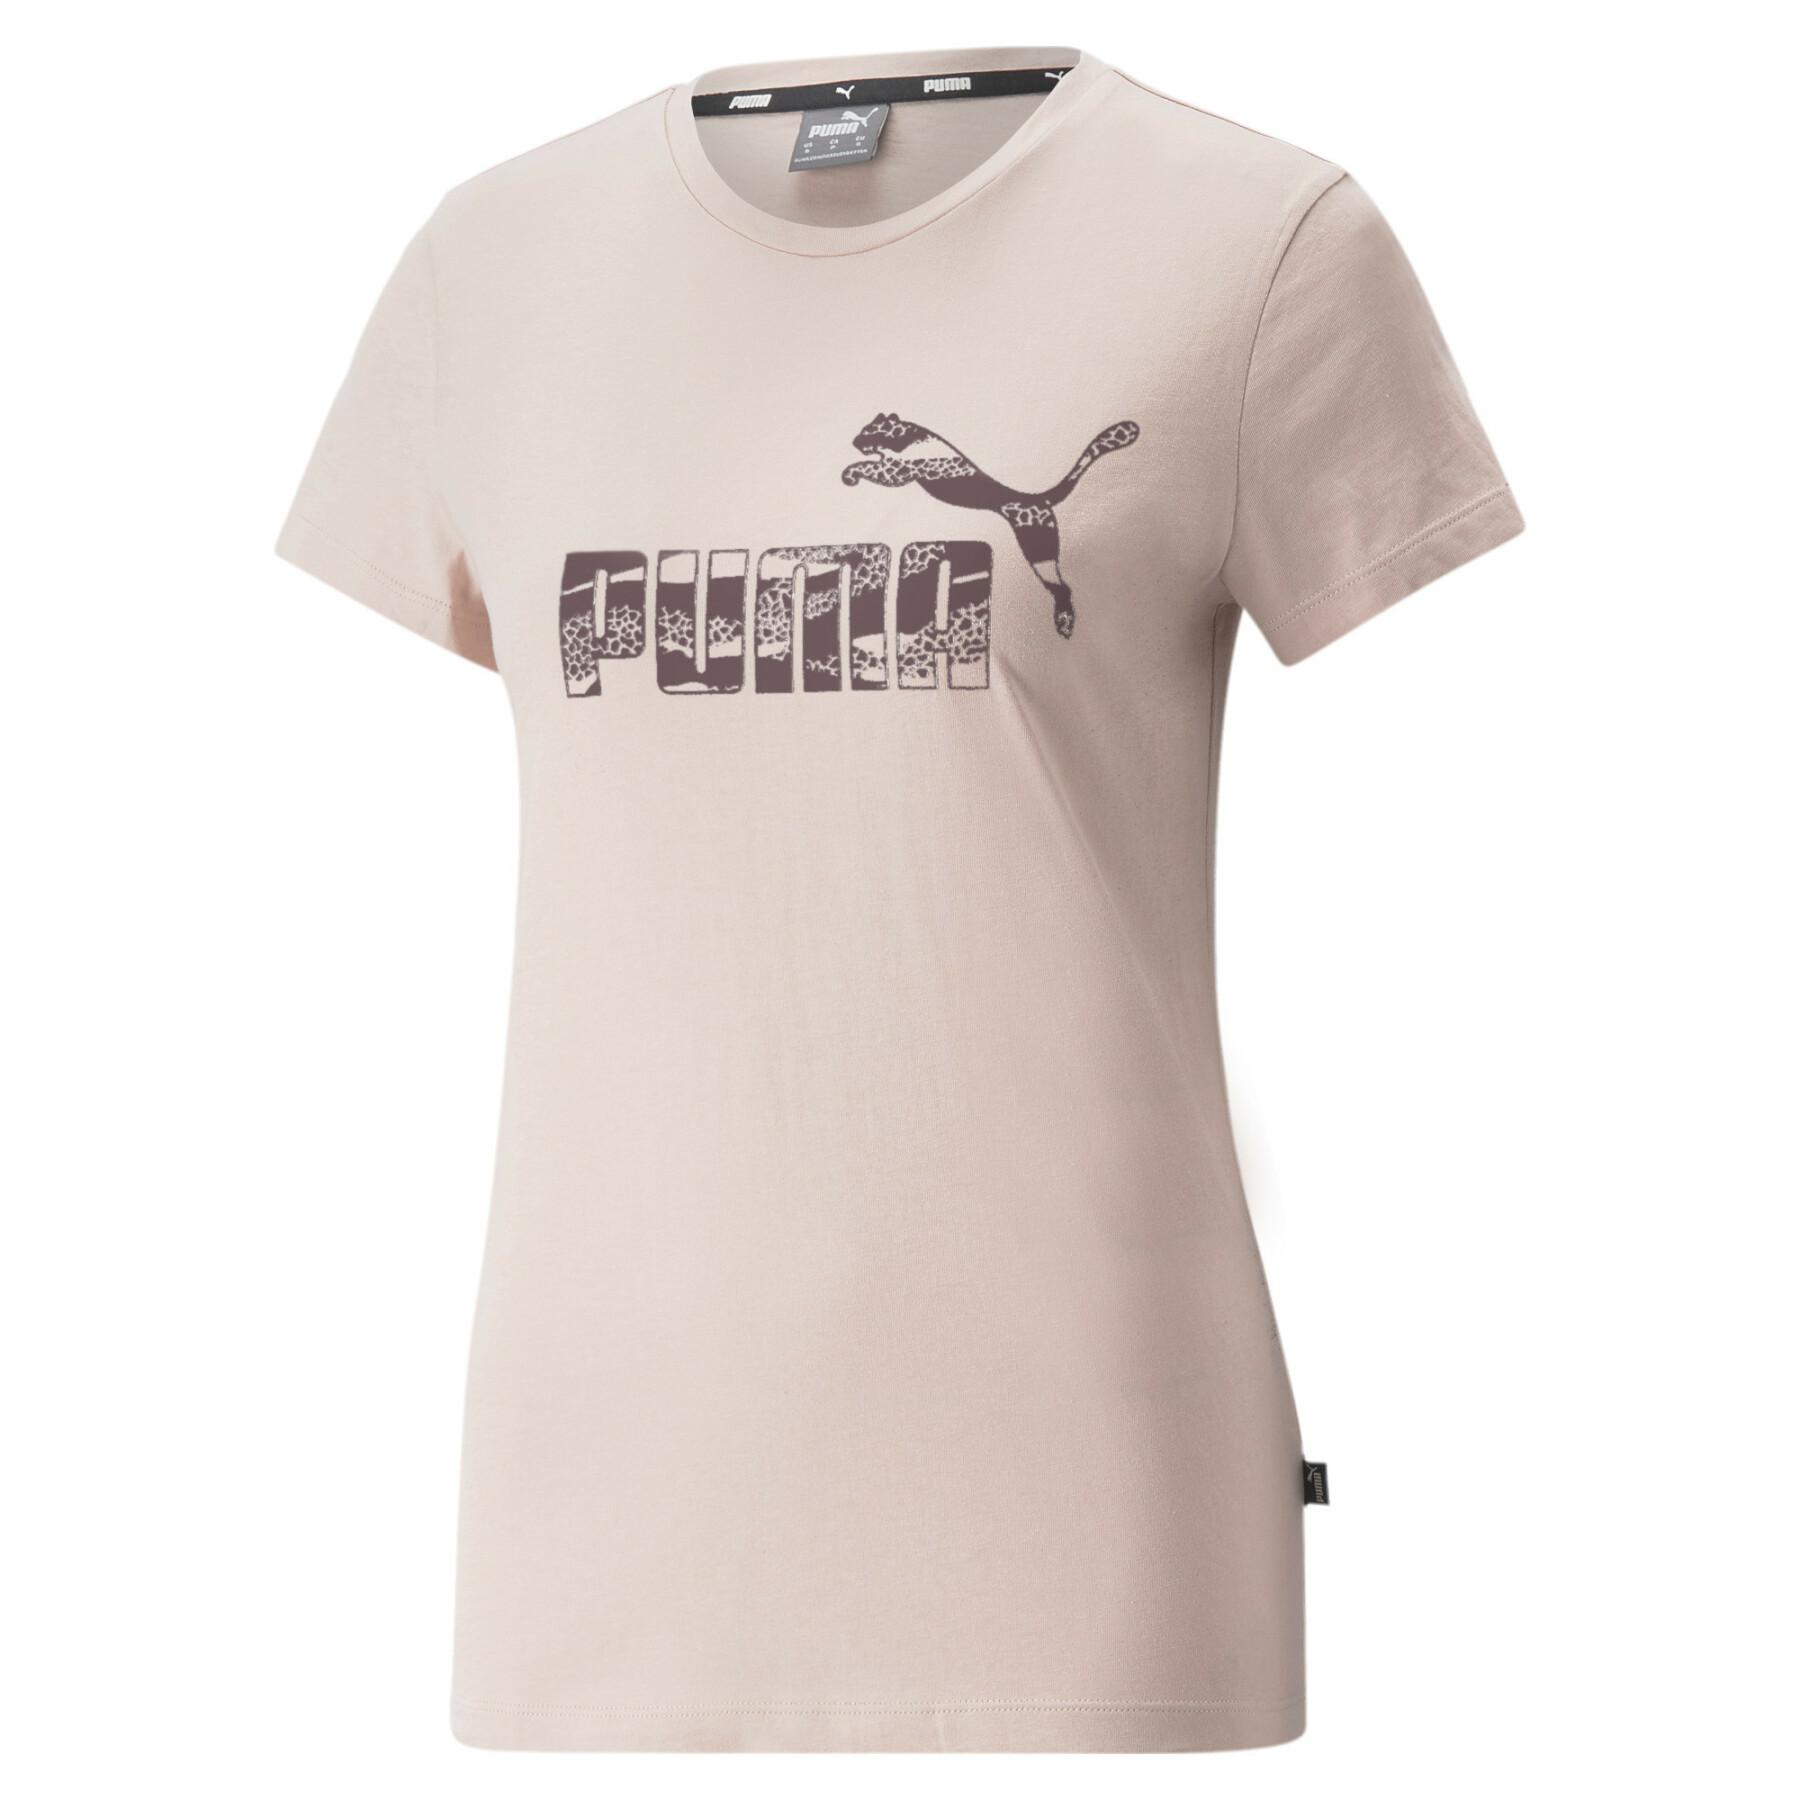 ESS+ - Animal Puma Lifestyle - T-shirts Woman - woman T-shirt Lifestyle